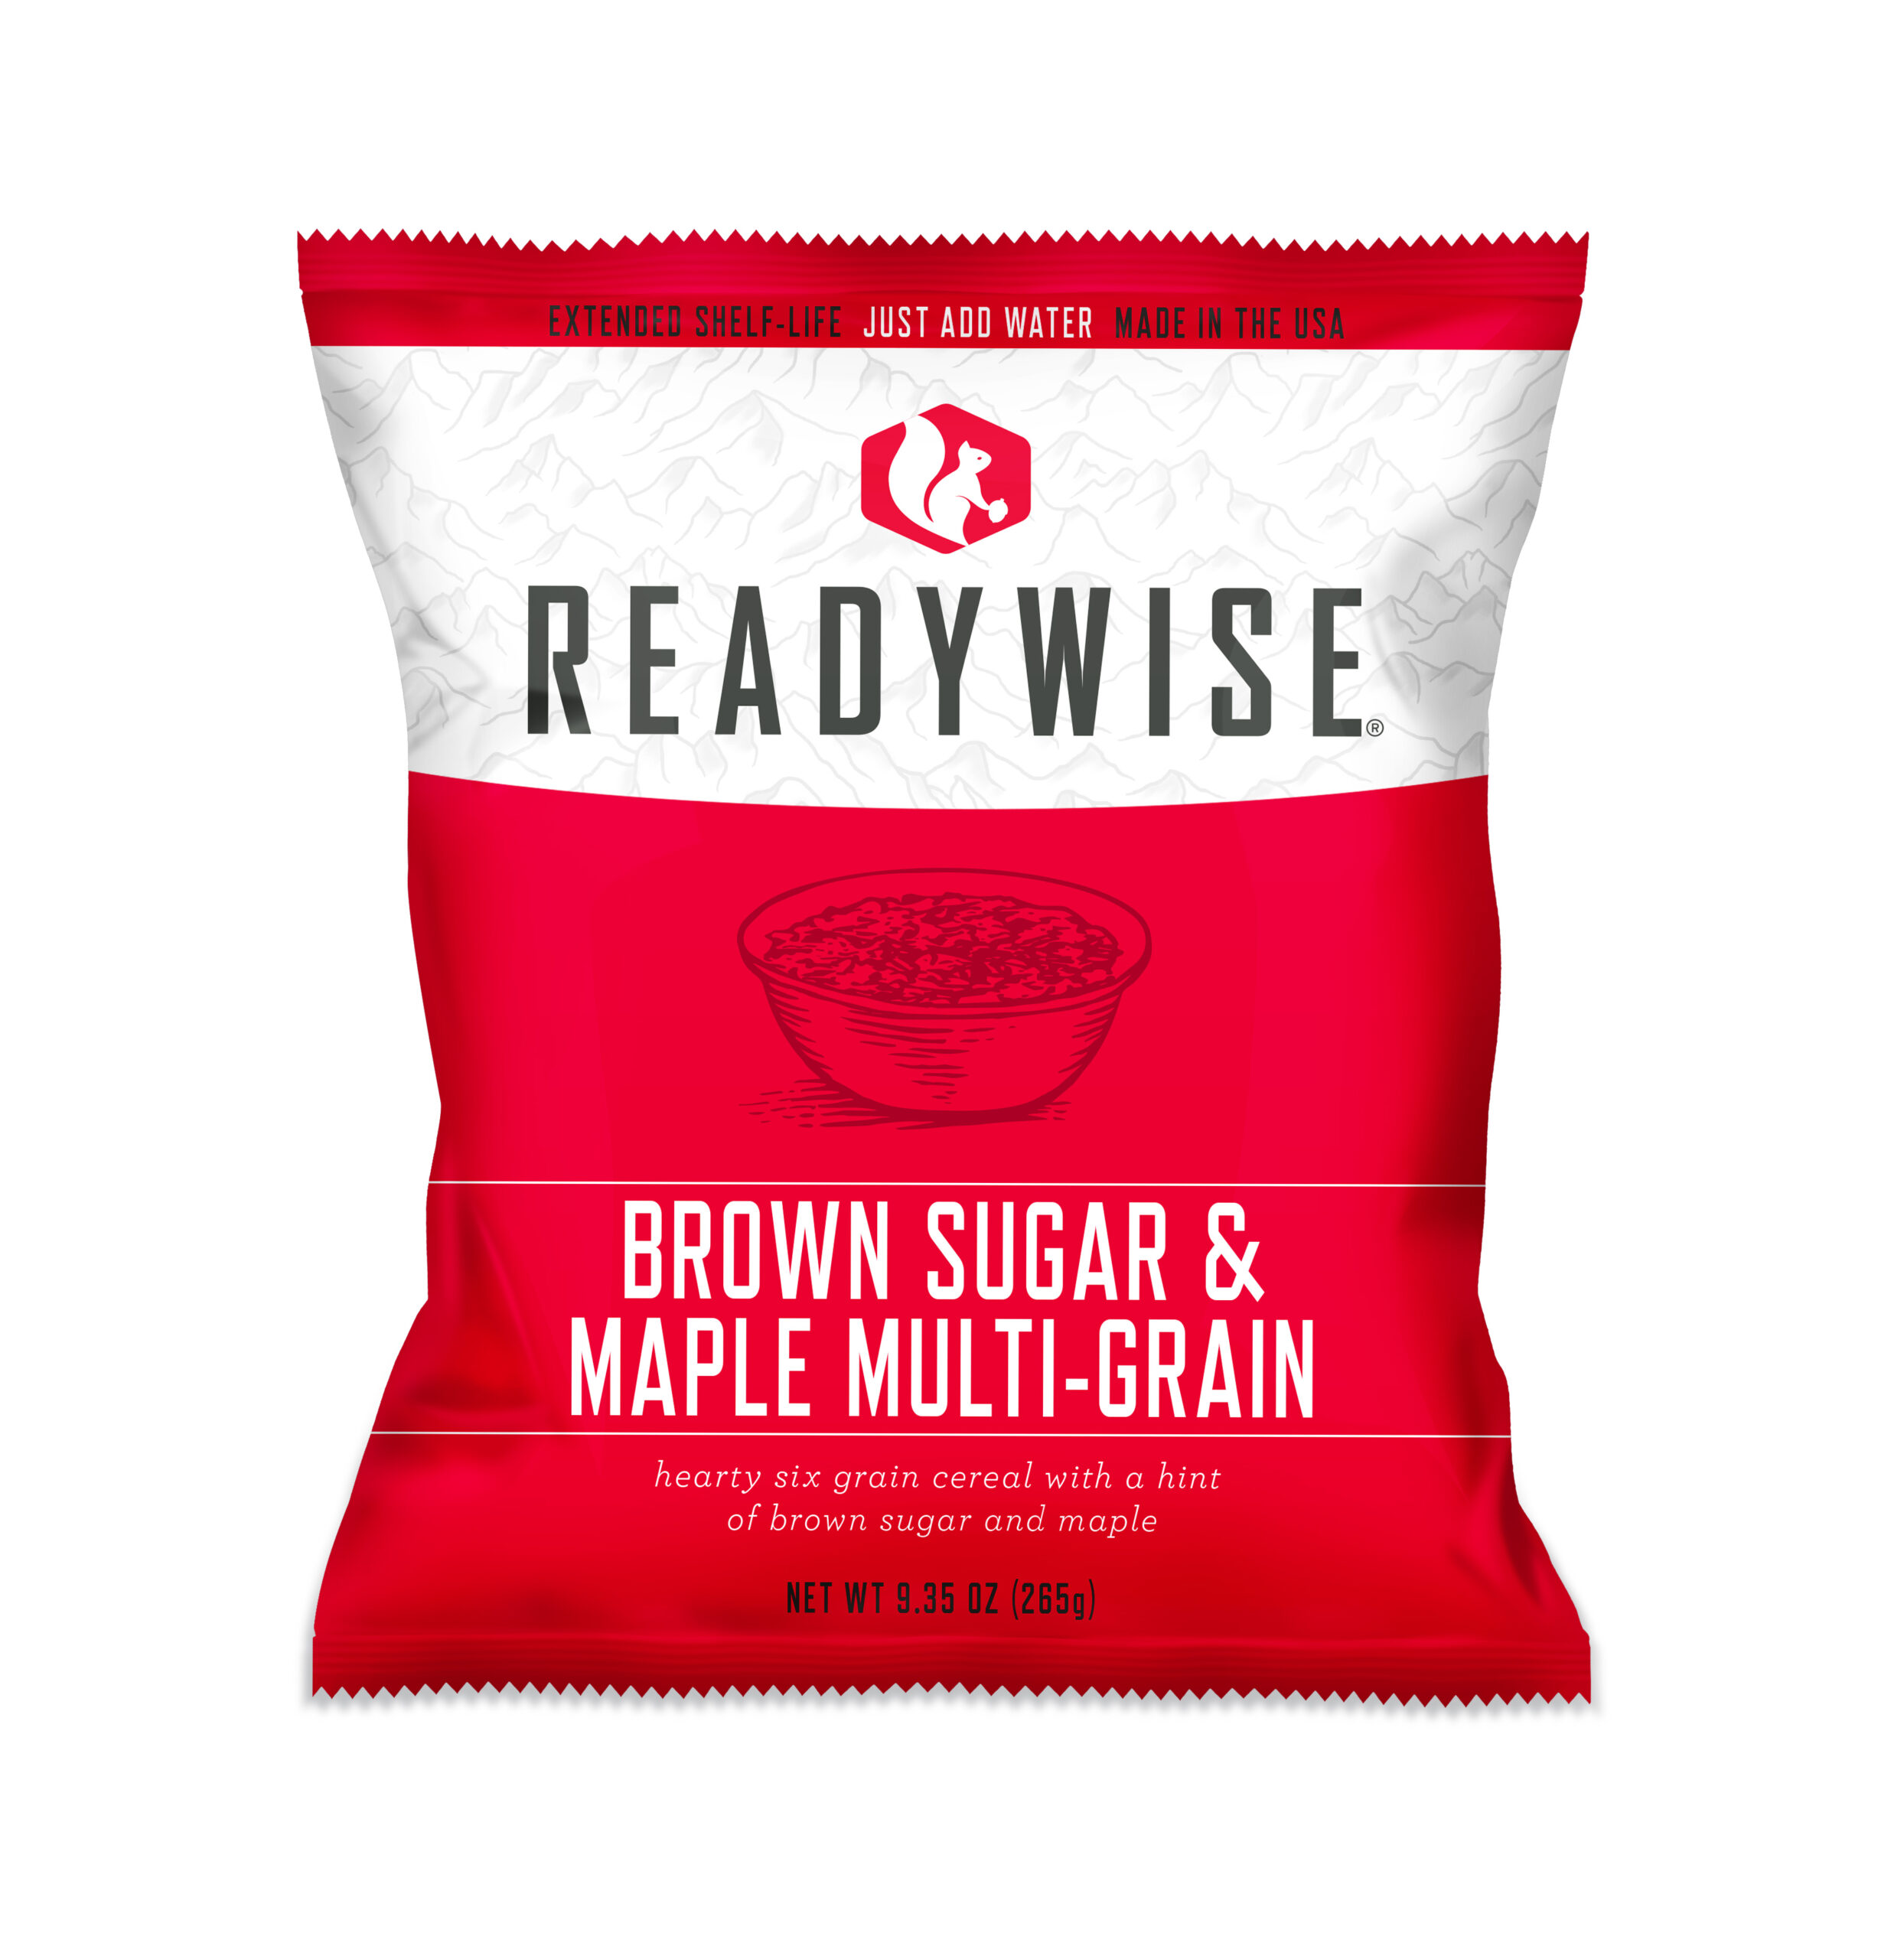 Brown-Sugar-Maple-Multi-Grain copy